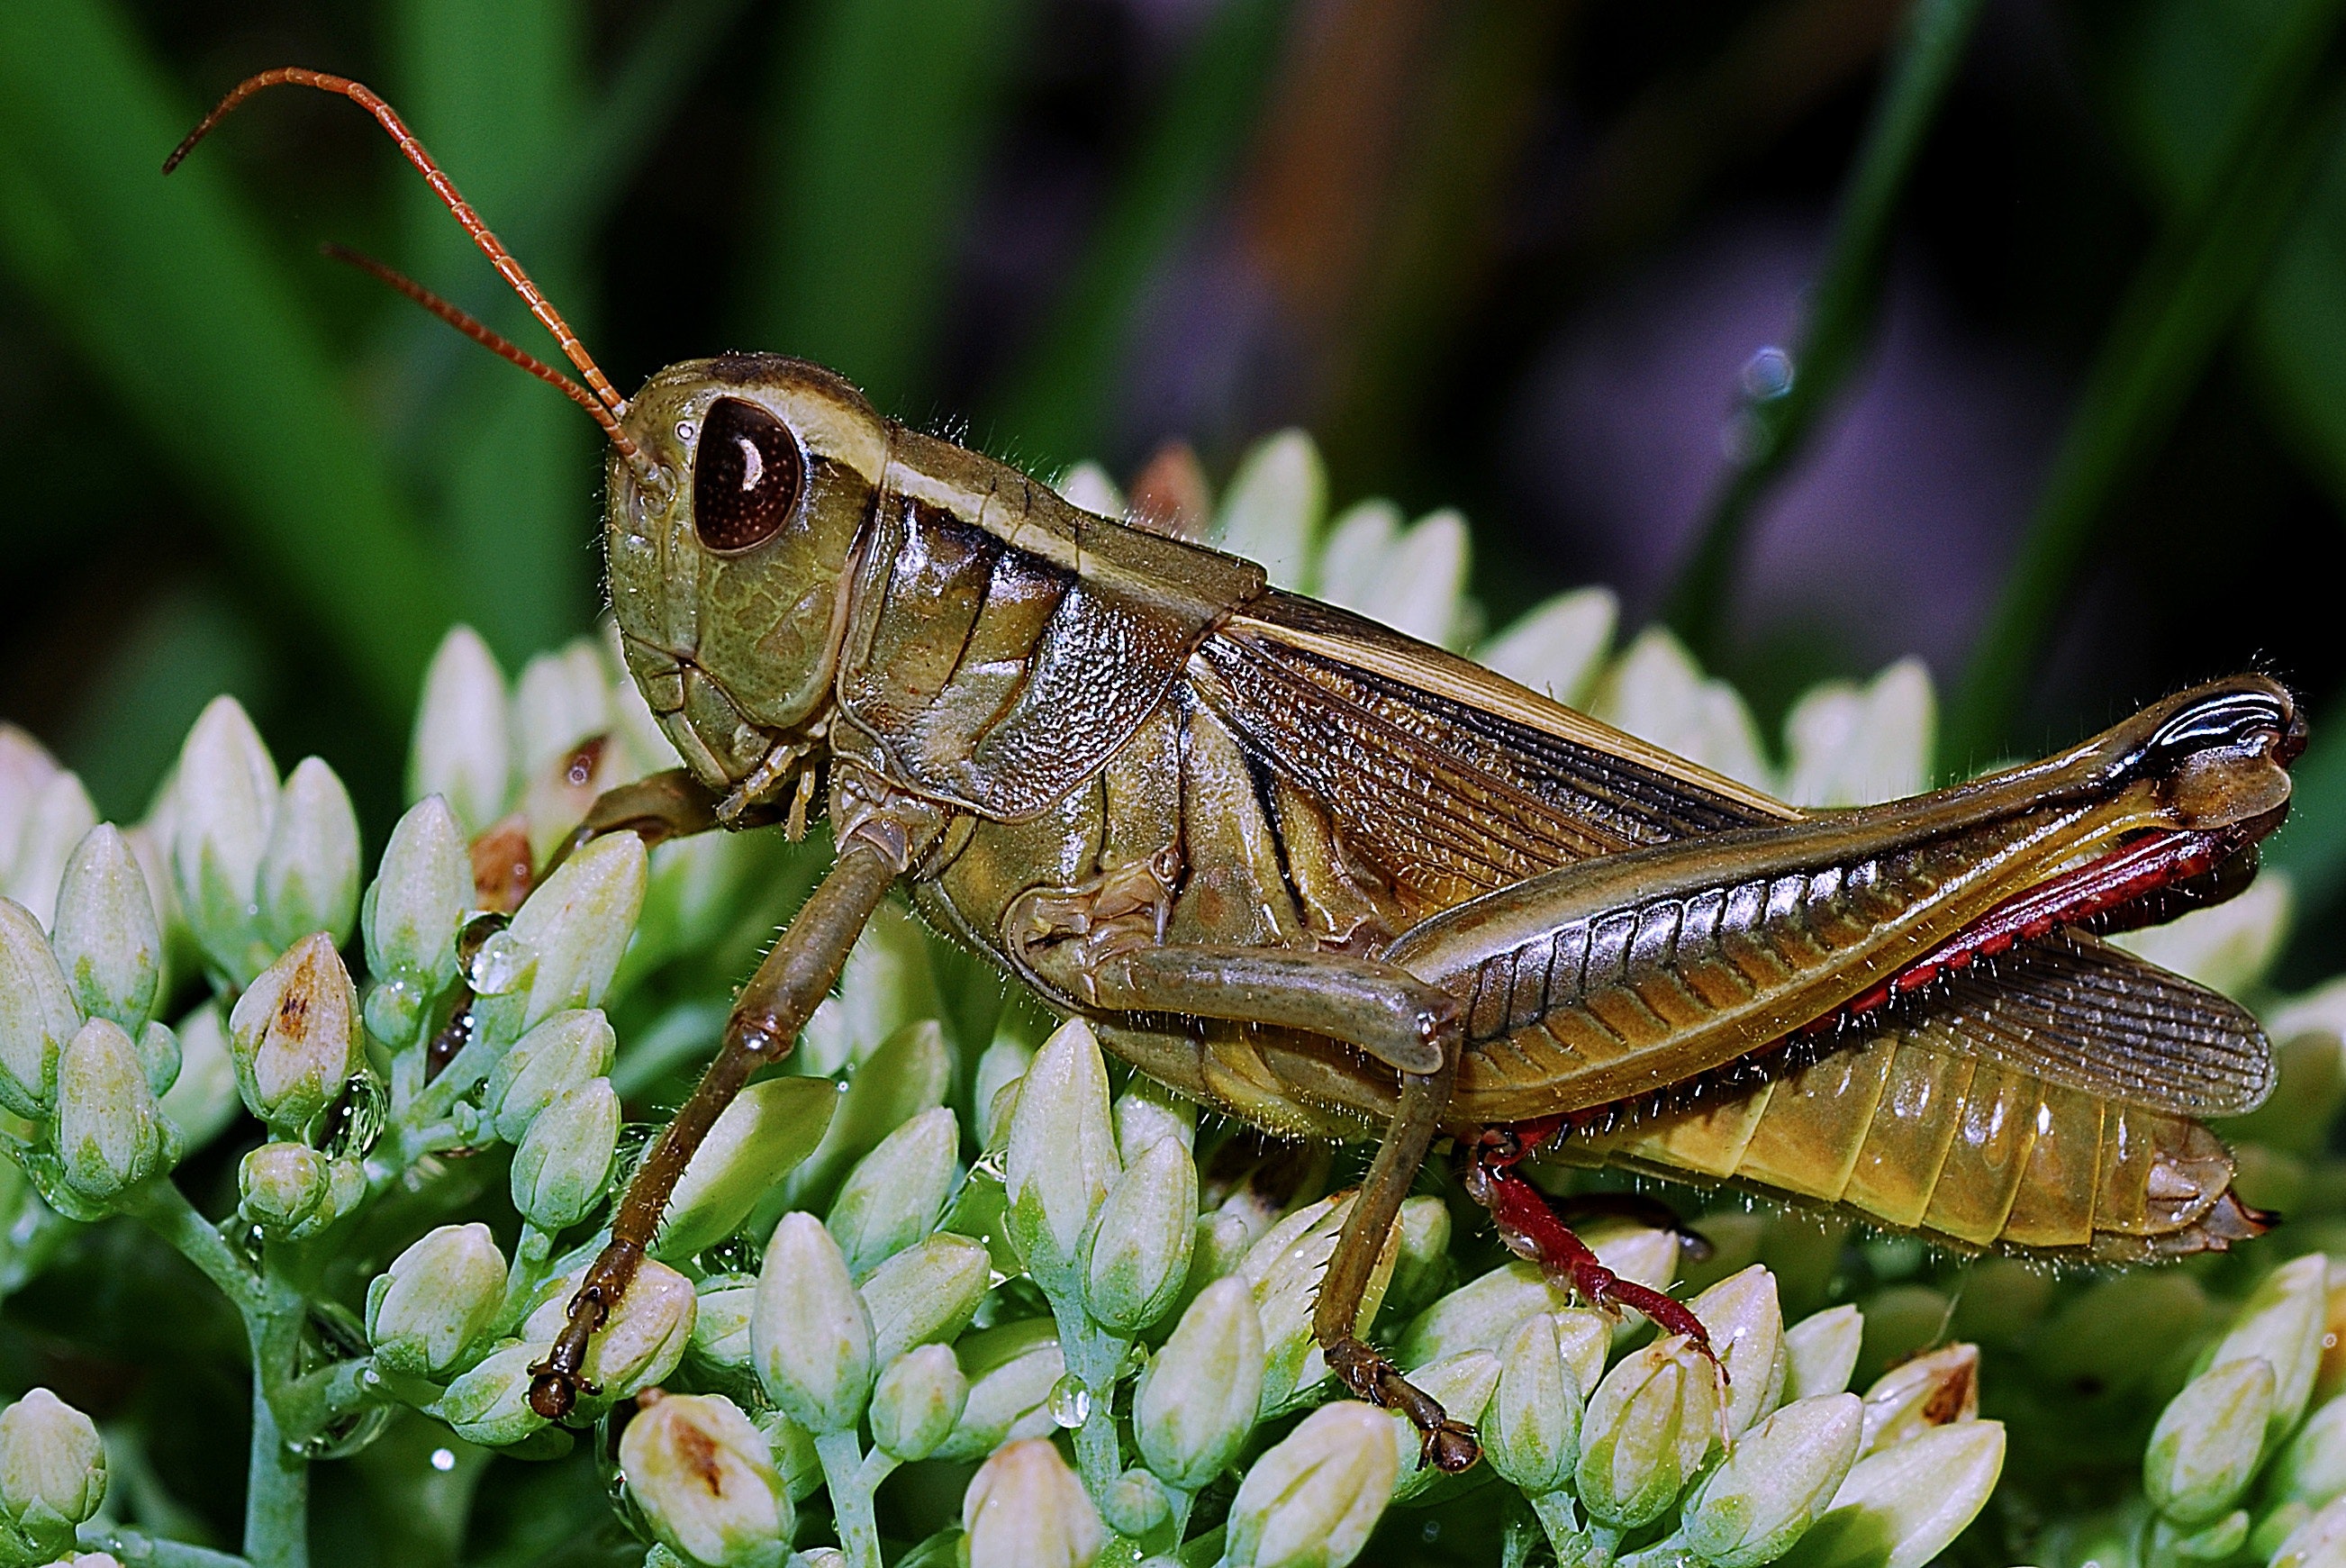 Green grasshopper photo